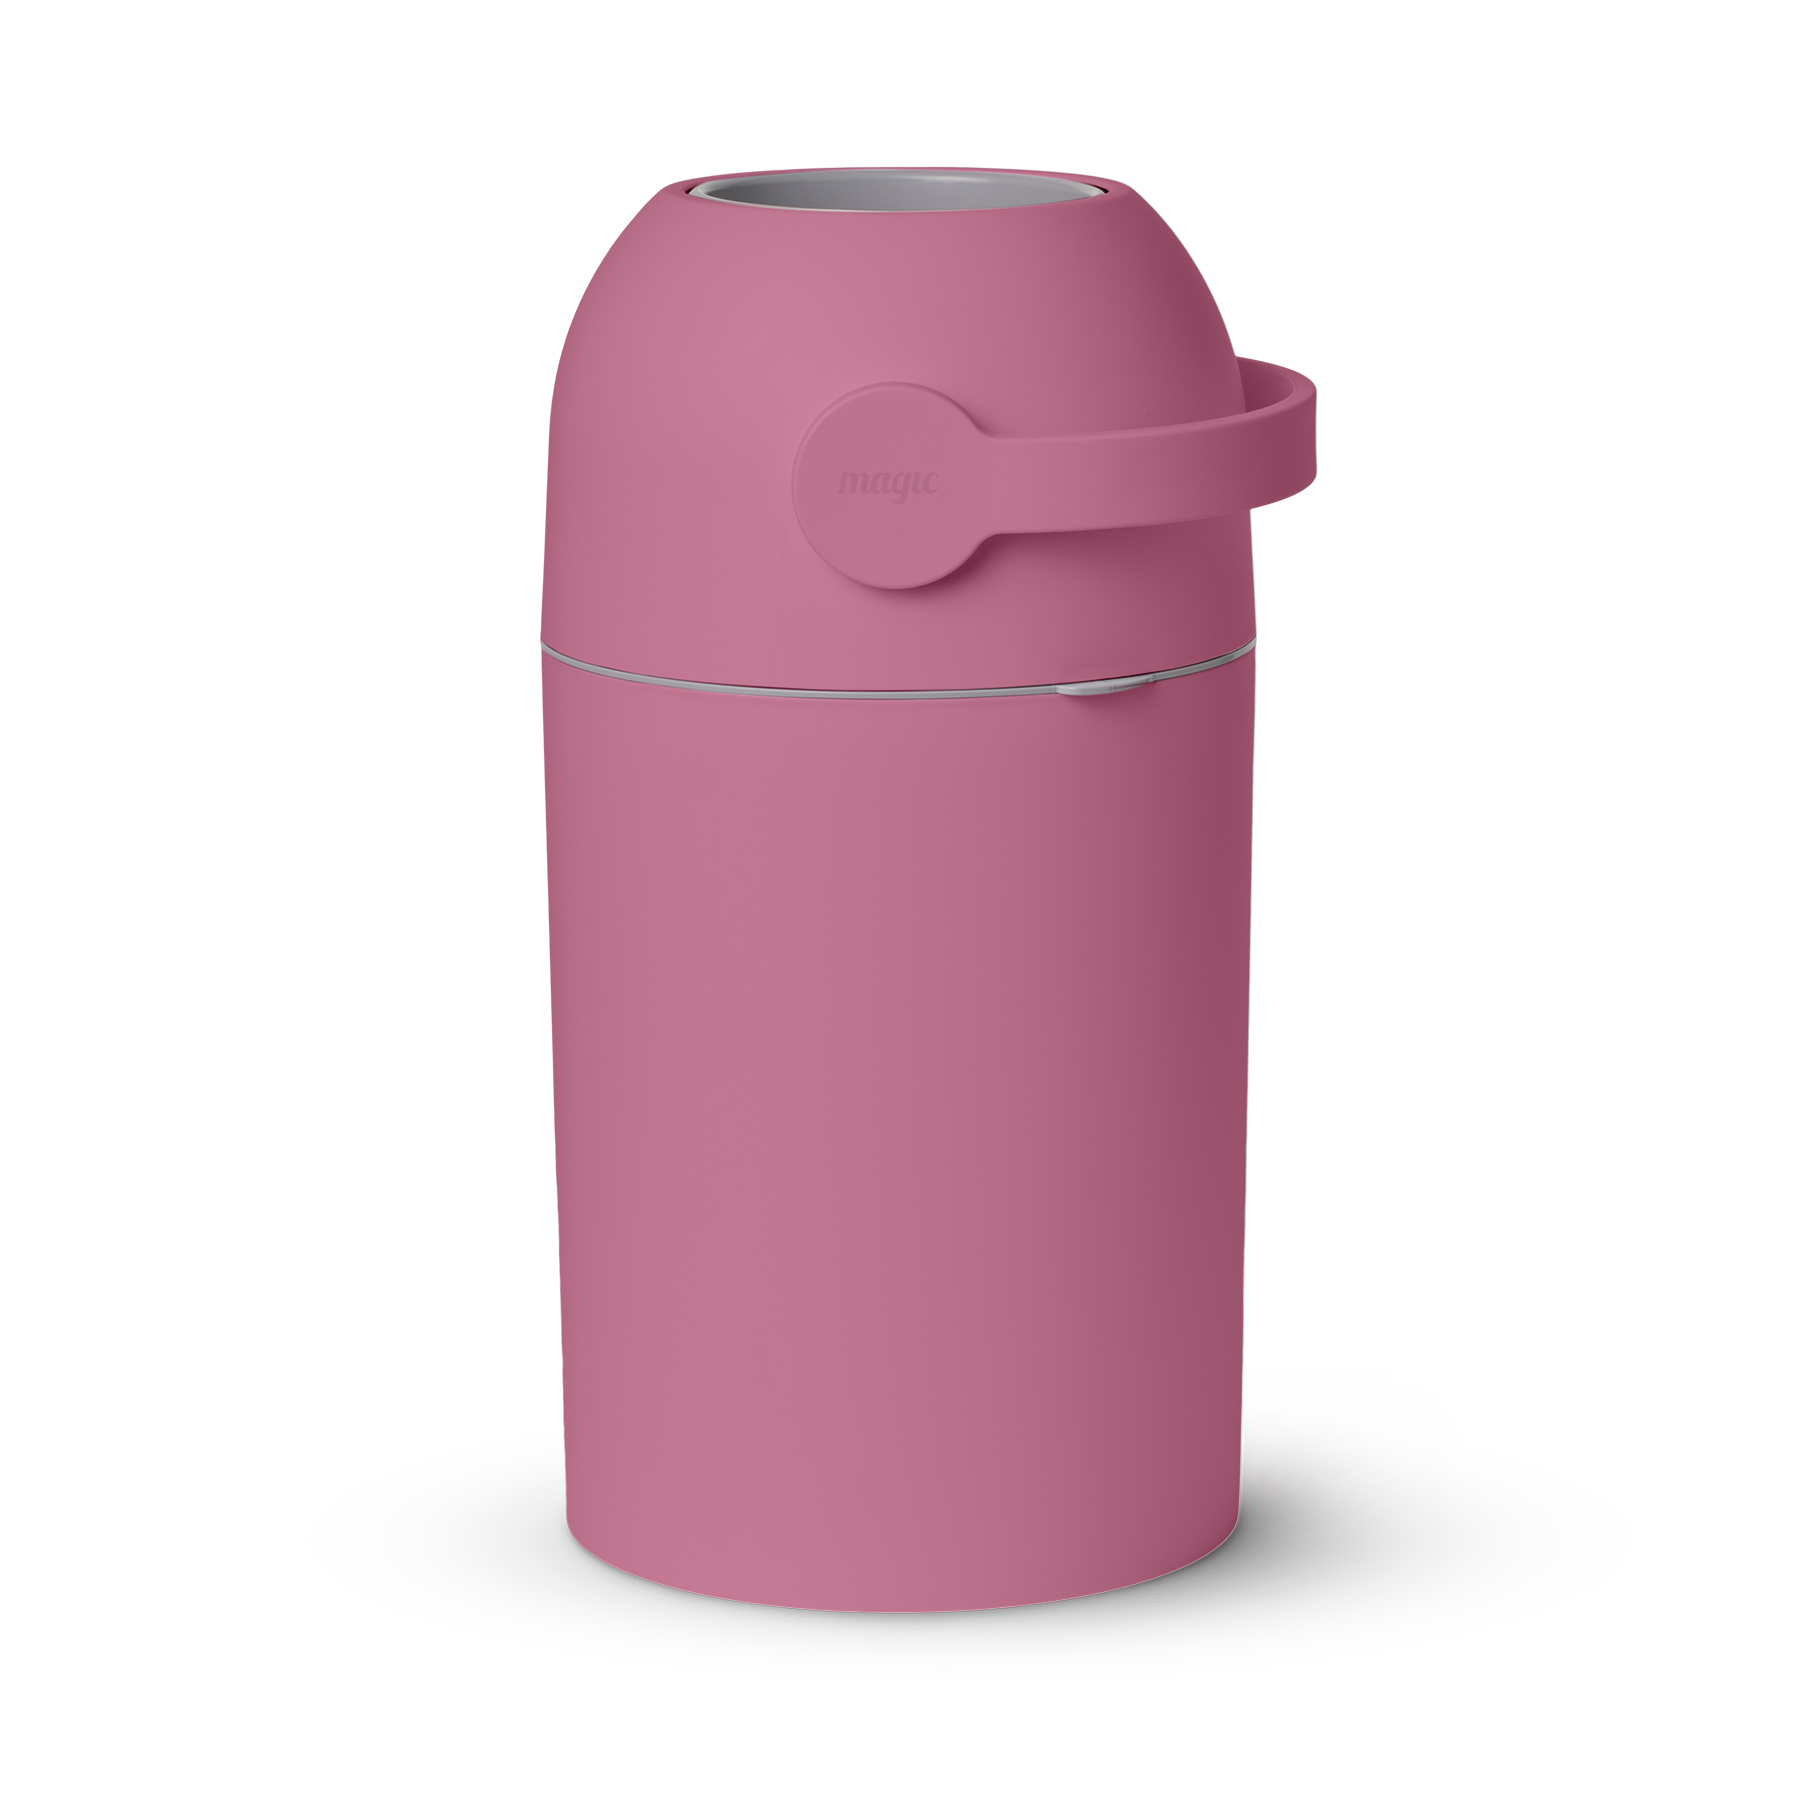 Накопитель подгузников Magic Diaper pail Majestic, Candy Pink